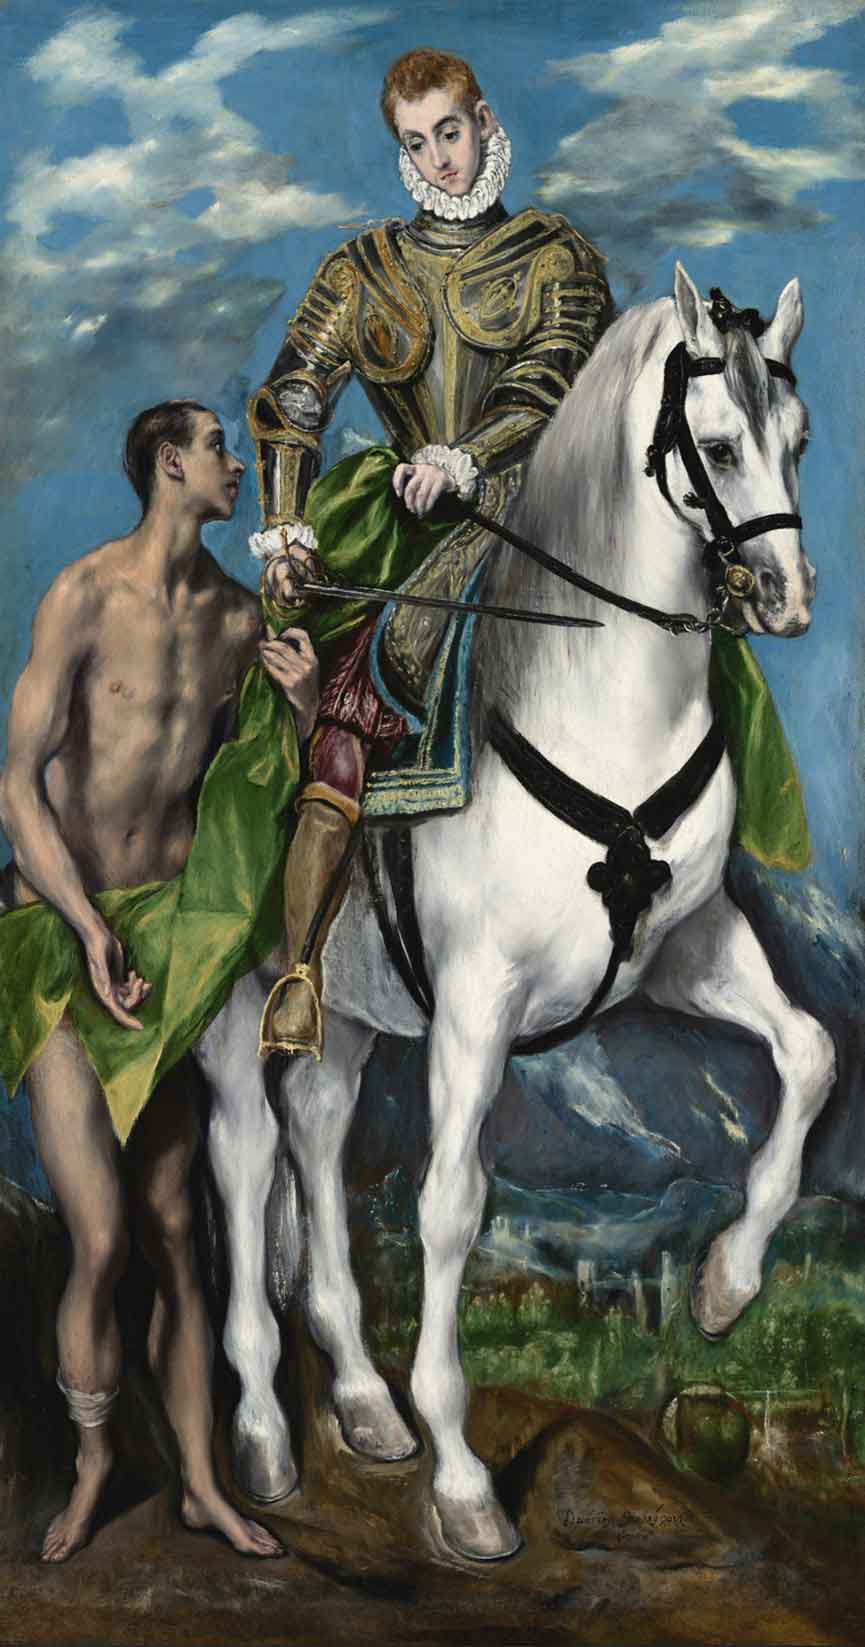 Mostra El Greco Milano